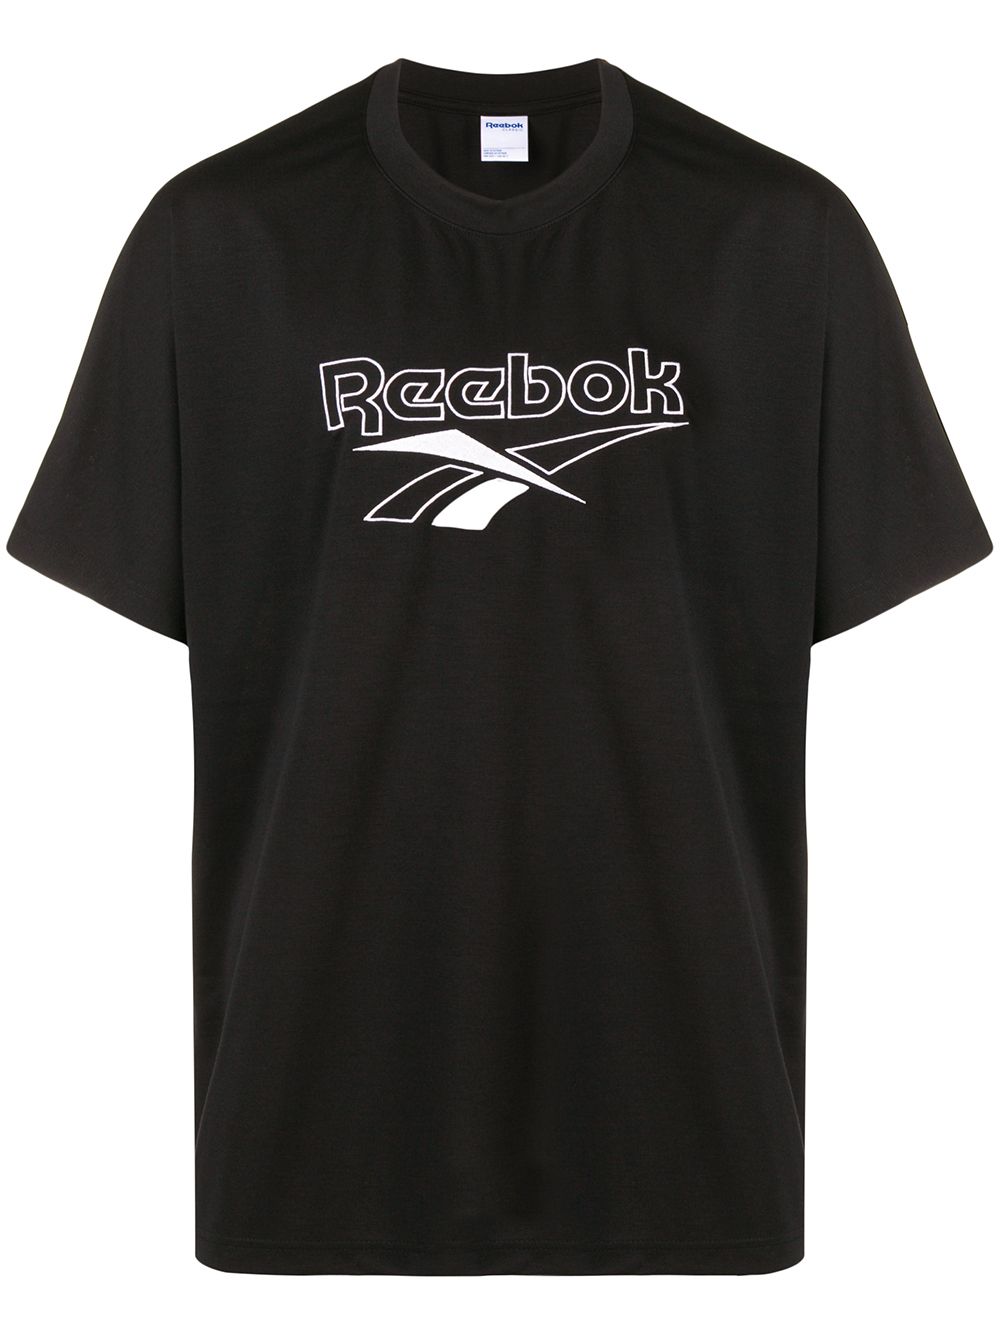 фото Reebok футболка с логотипом